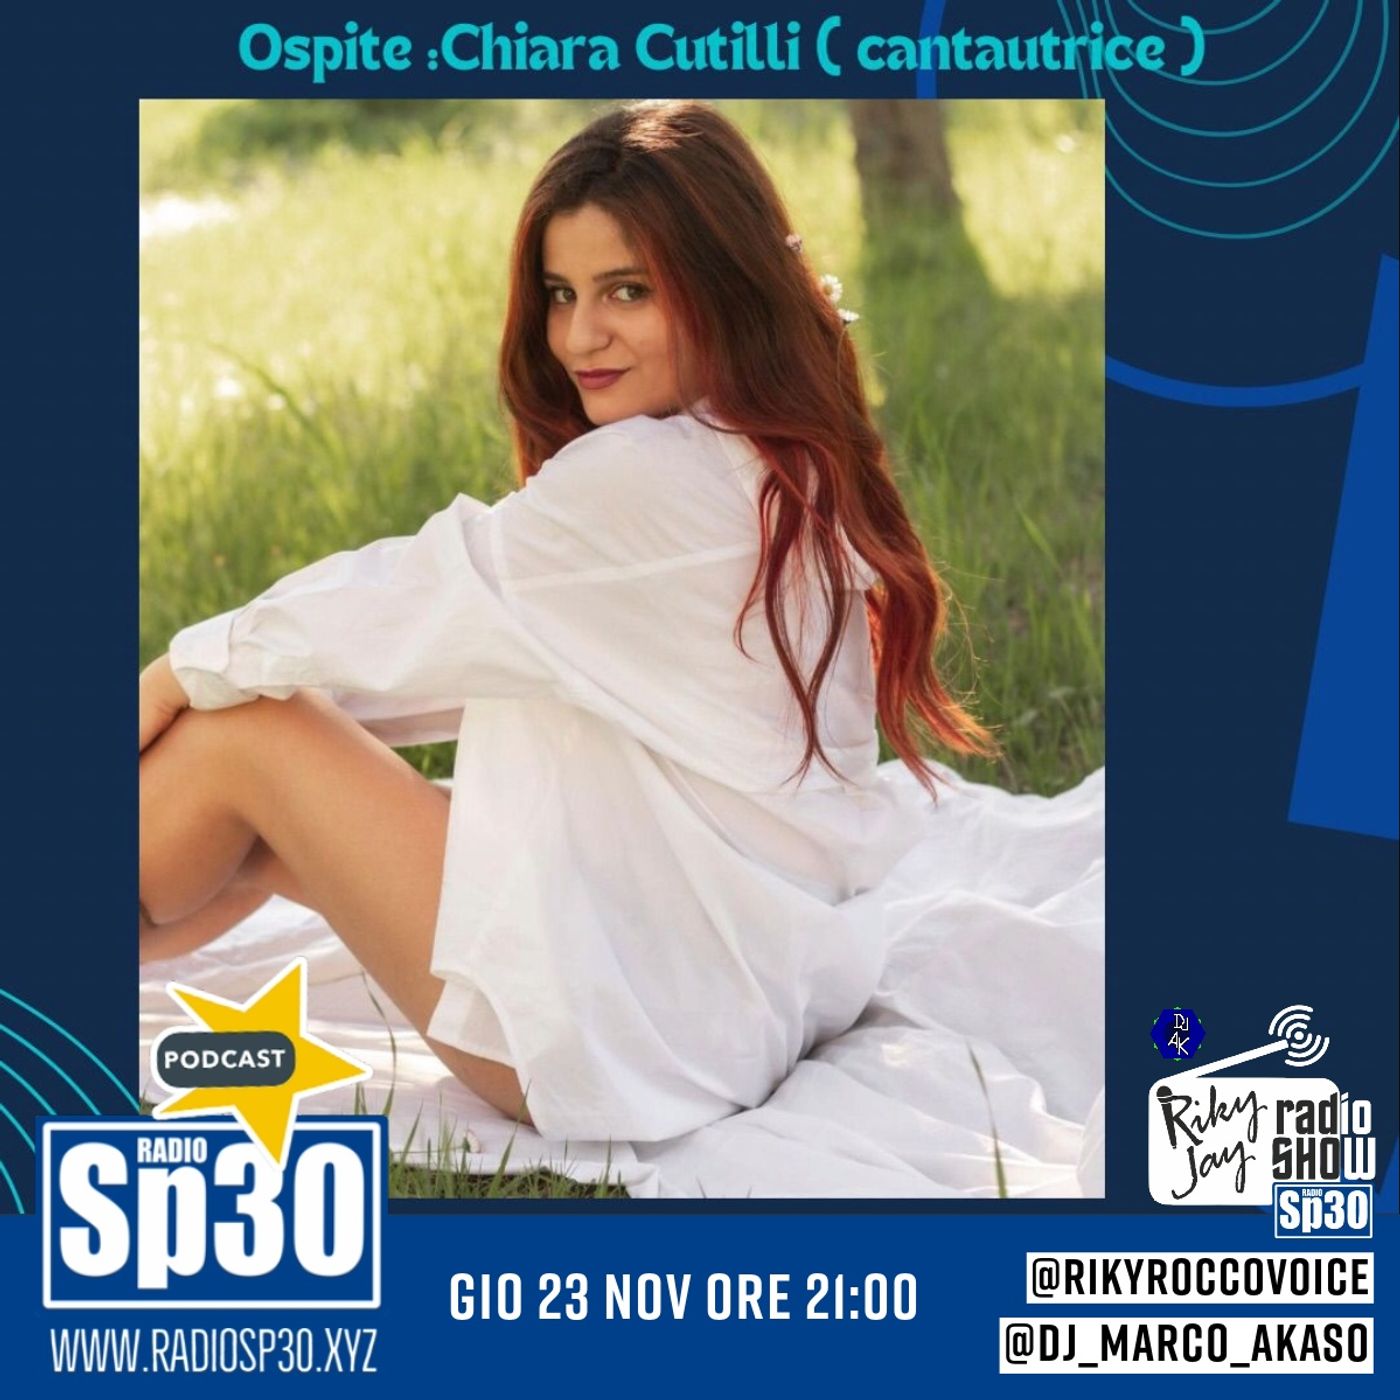 RikyJay Radio Show - ST.5 N.09 - Ospiite Chiara Cutilli